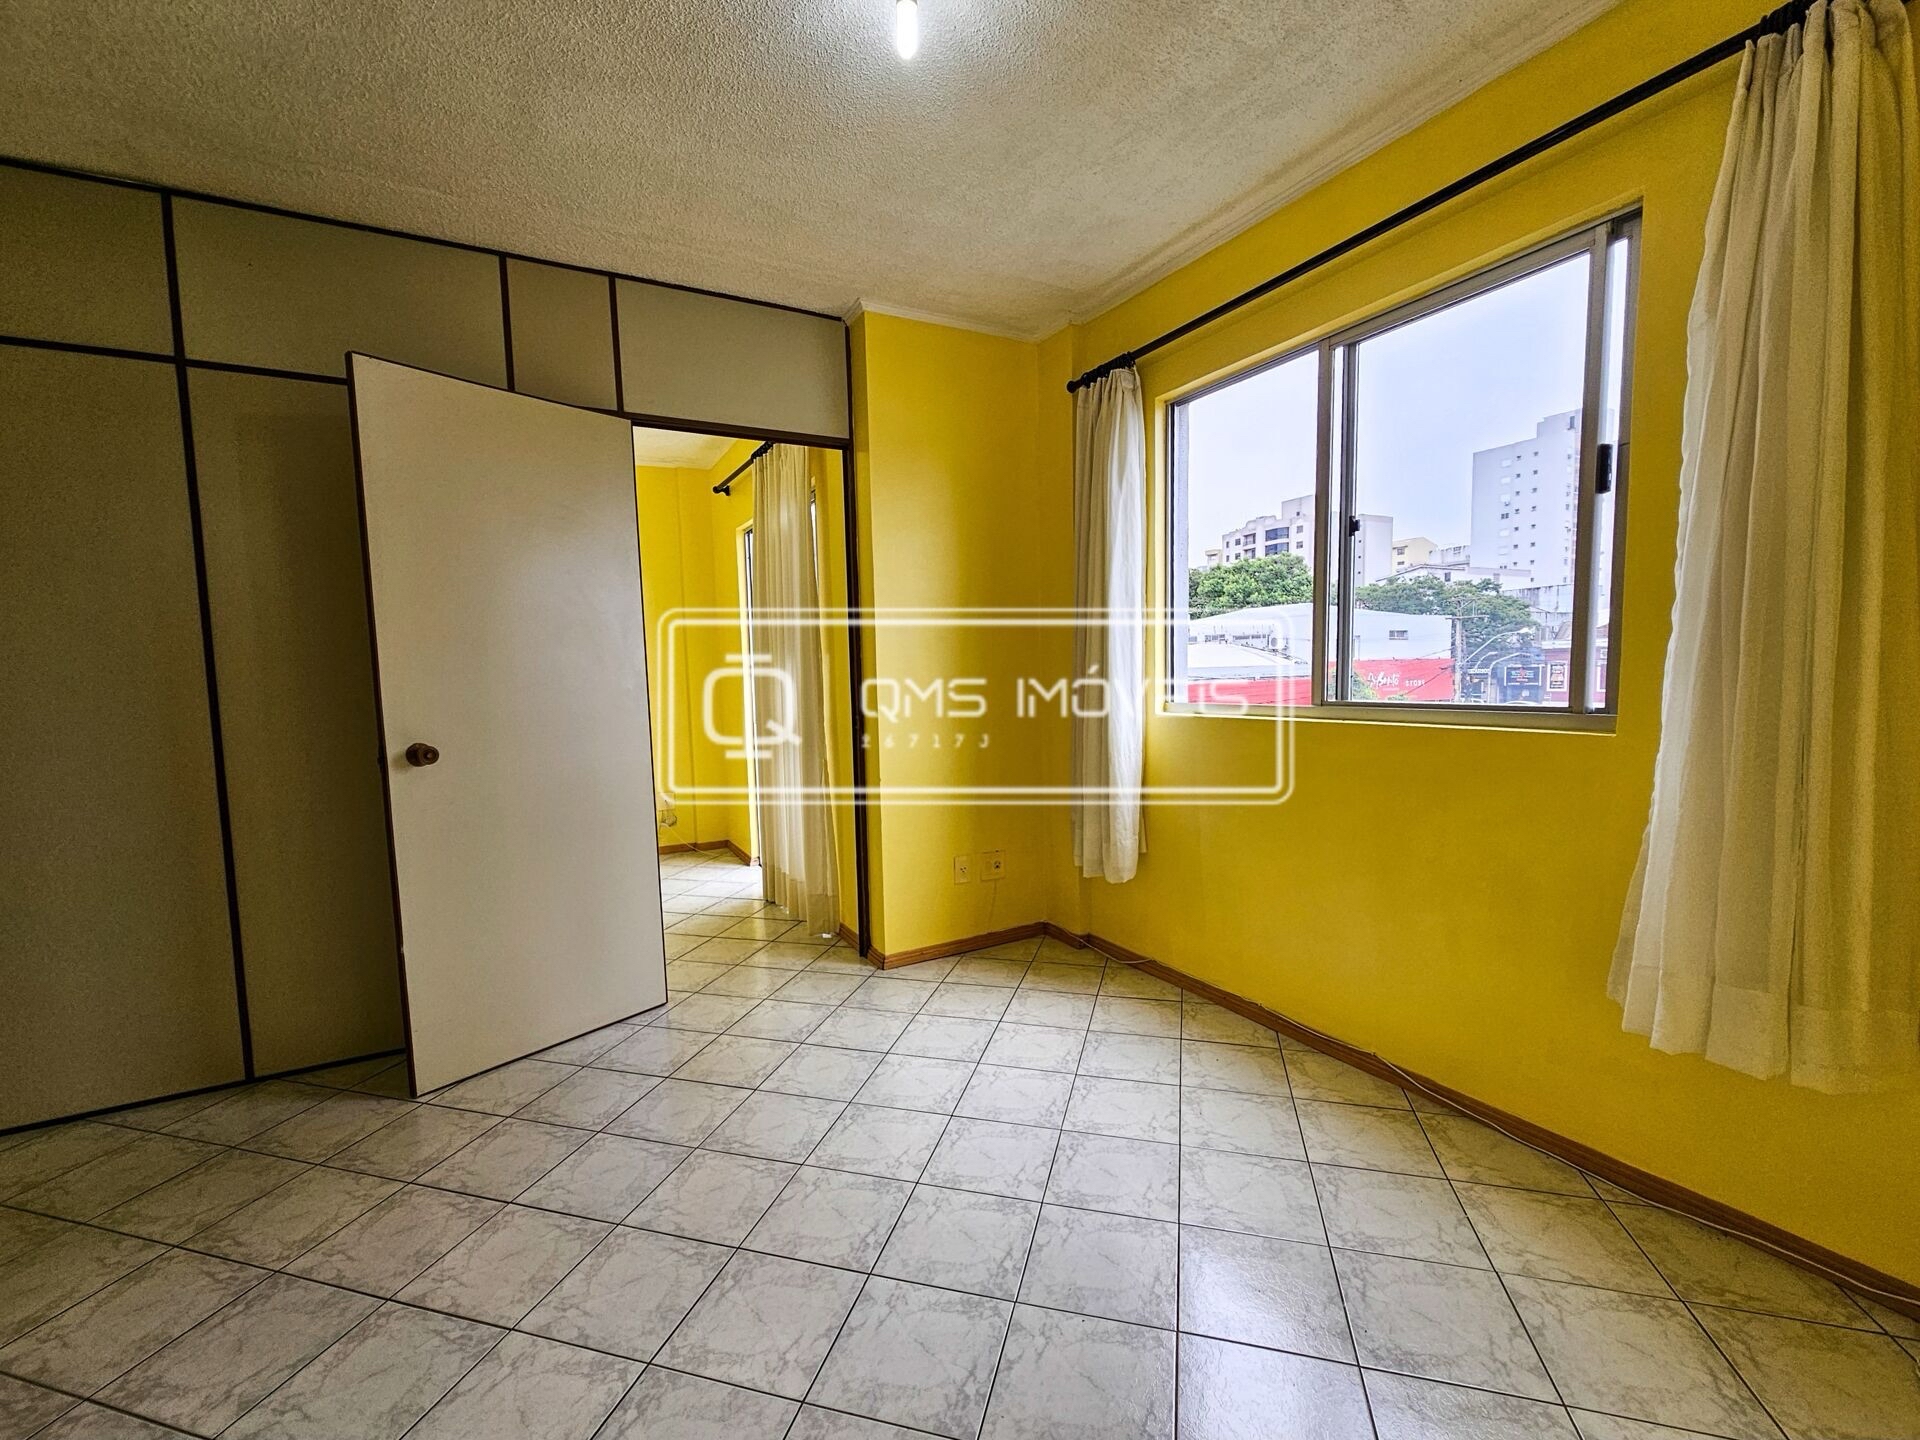 Apartamento, 1 quarto, 35 m² - Foto 1